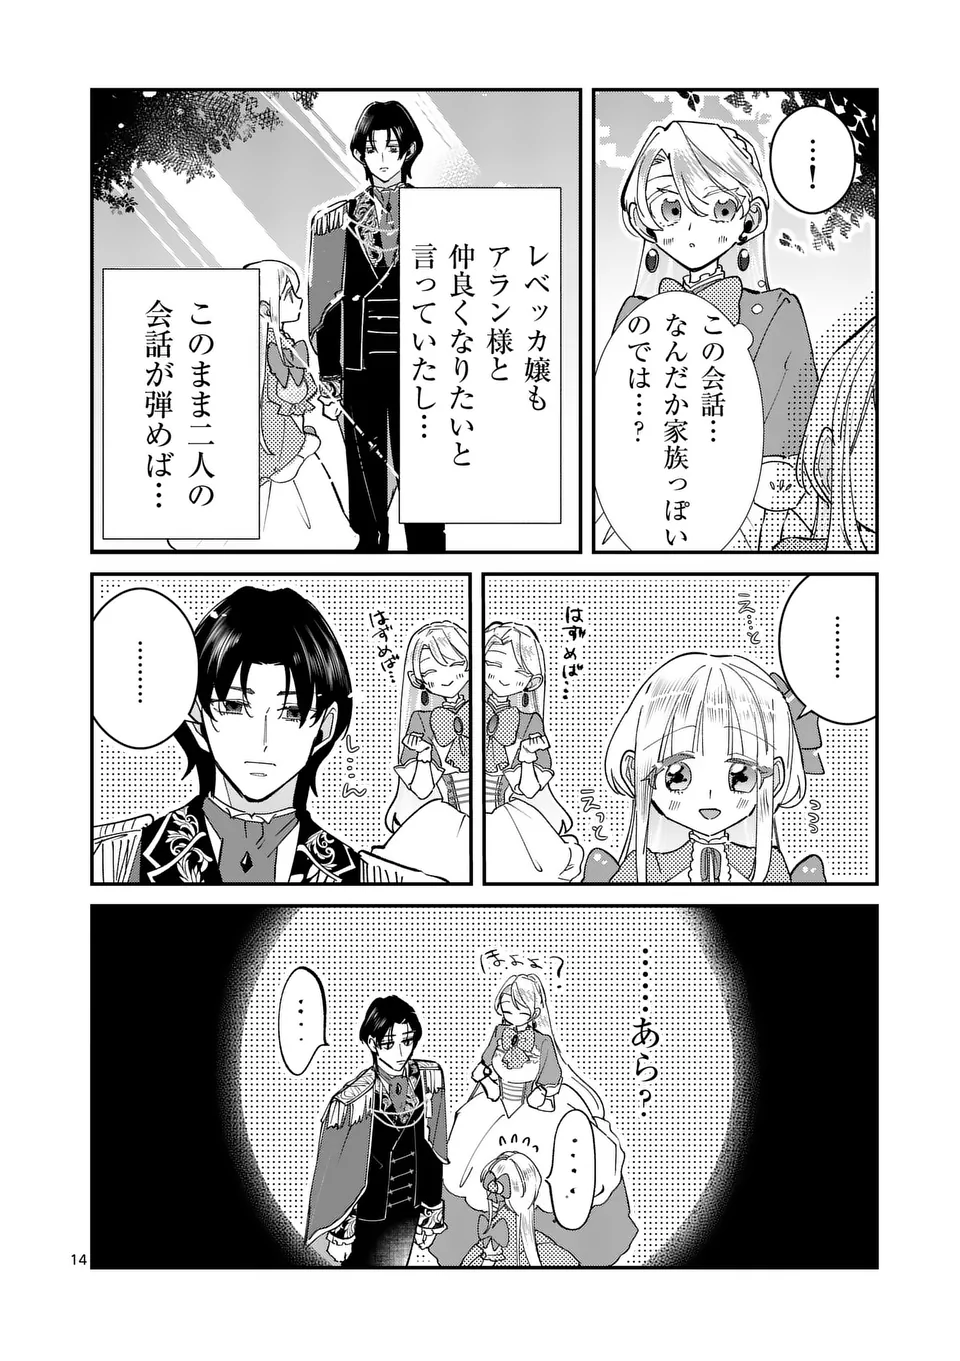 Gijou ga Akuyaku Reijou to shite Hametsu suru Koto wo Shitta no de, Mechakucha Aishimasu - Chapter 6 - Page 14